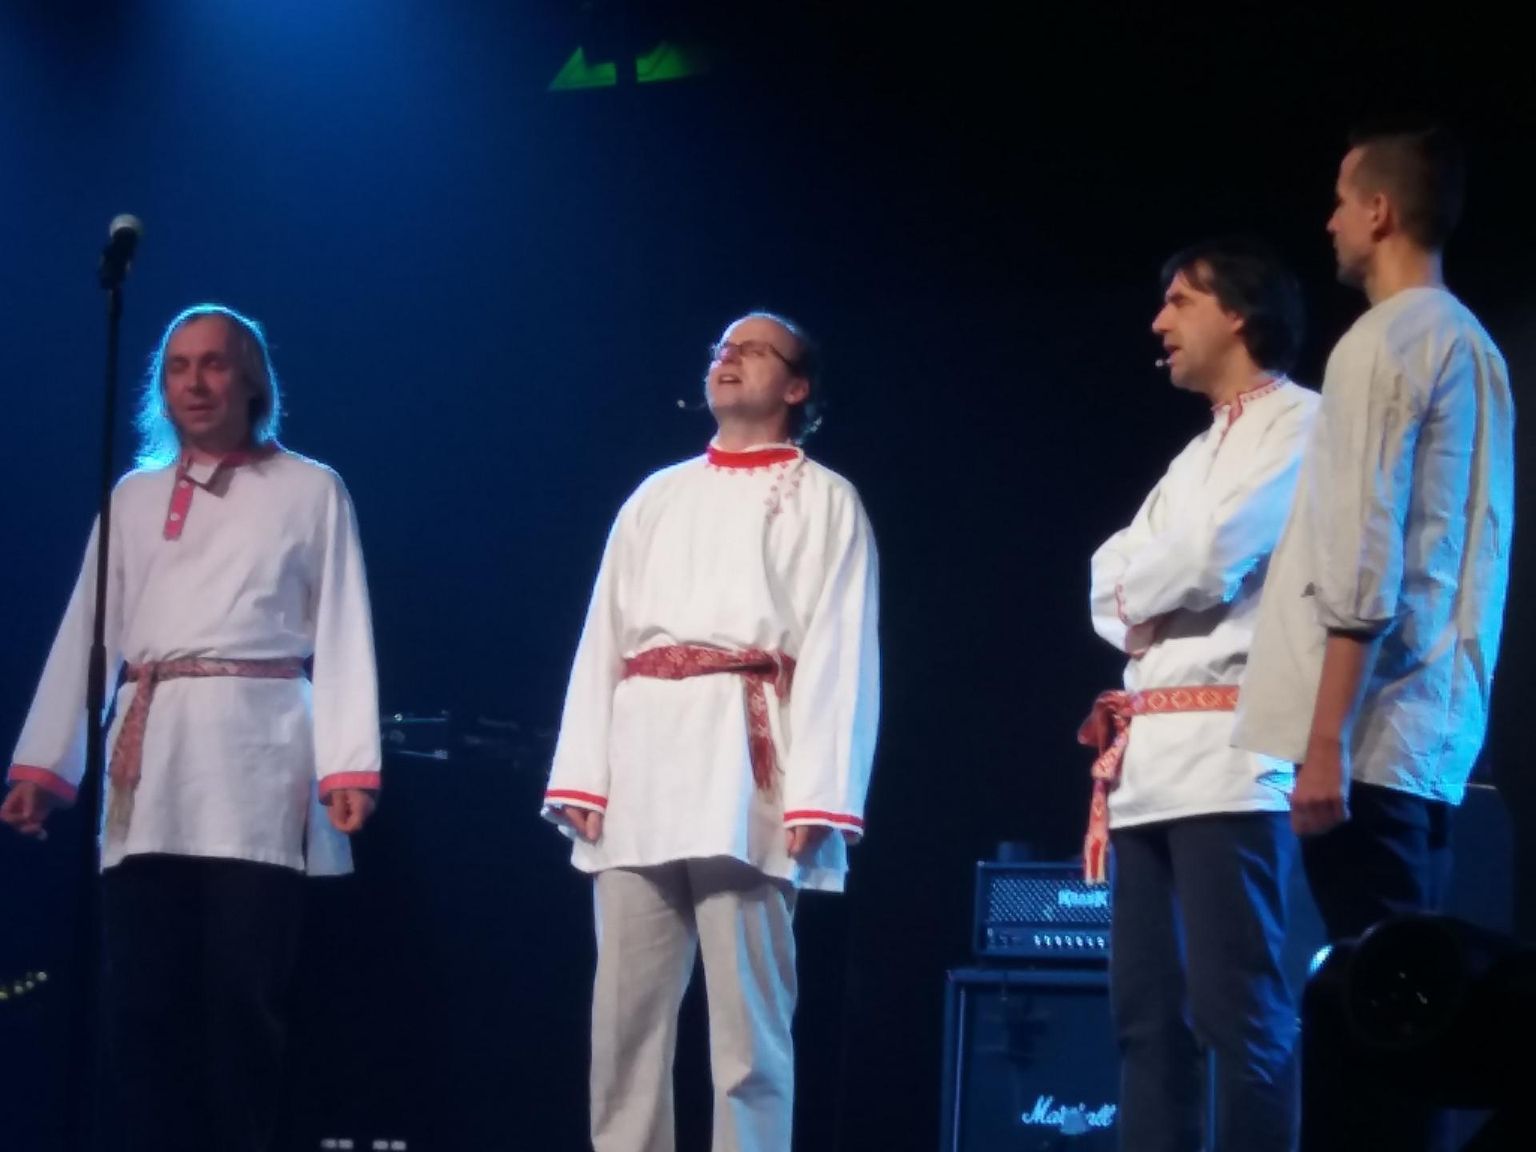 ERMi Öö laulis avatuks ansambel Ütsiotsõ, kuhu kuuluvad Lauri Sommer (vasakult), Urmas Kalla, Kaspar Kolk ja Andrus Kalkun.